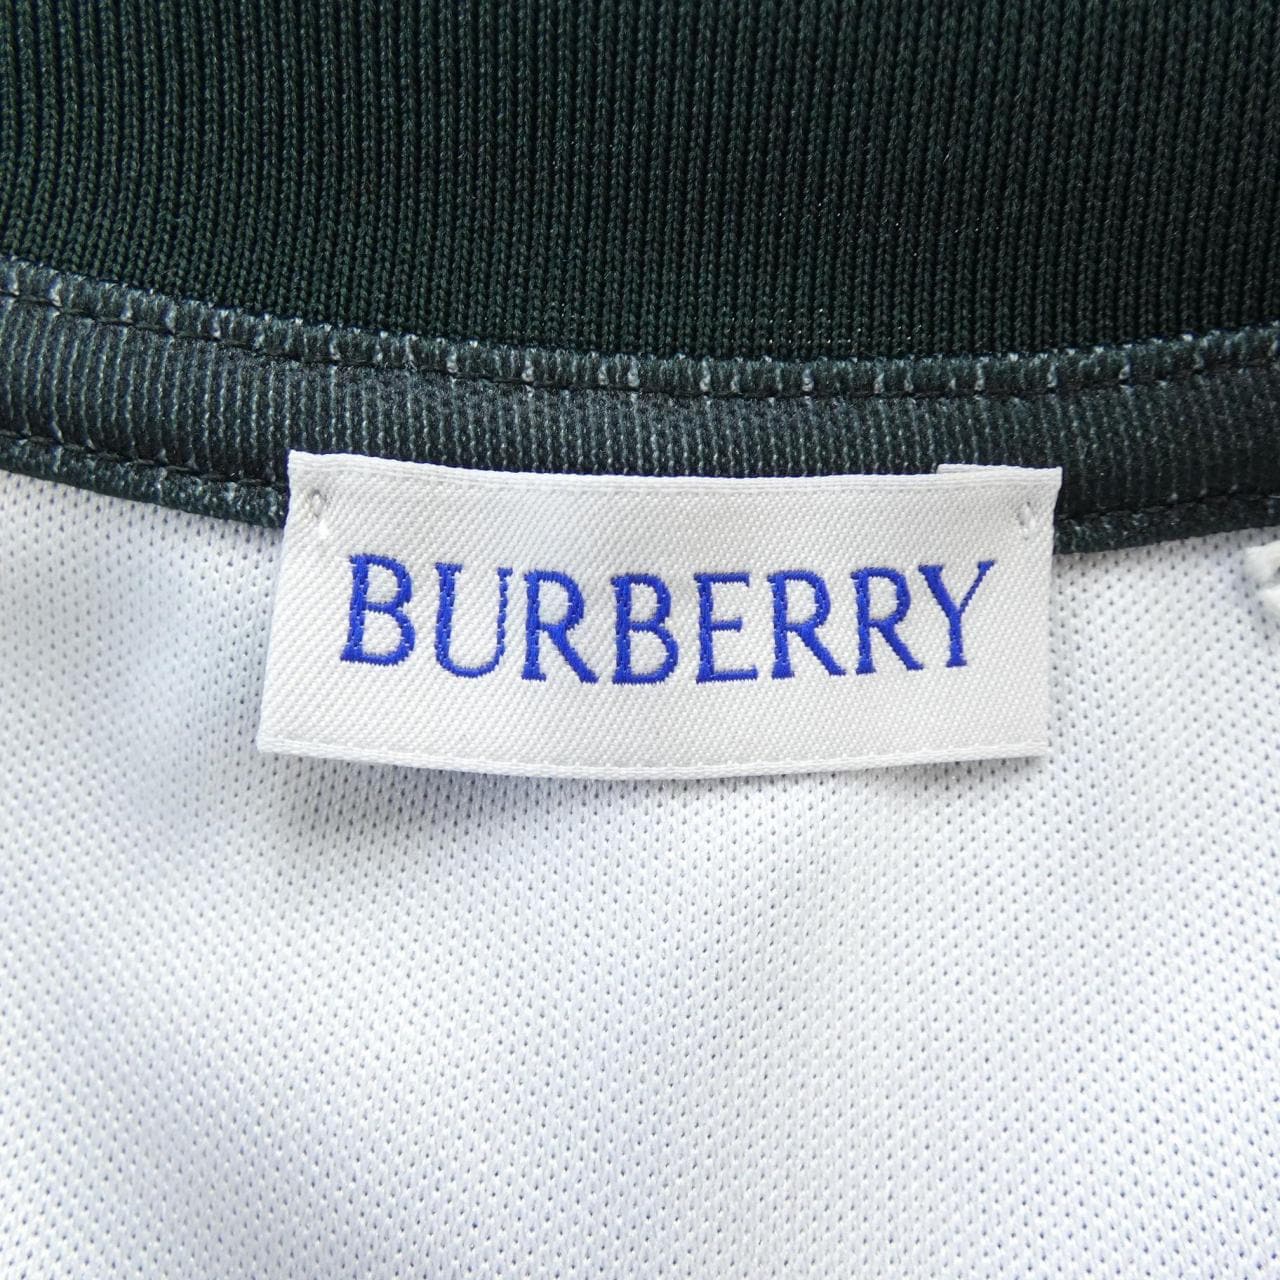 BURBERRY BURBERRY 上衣